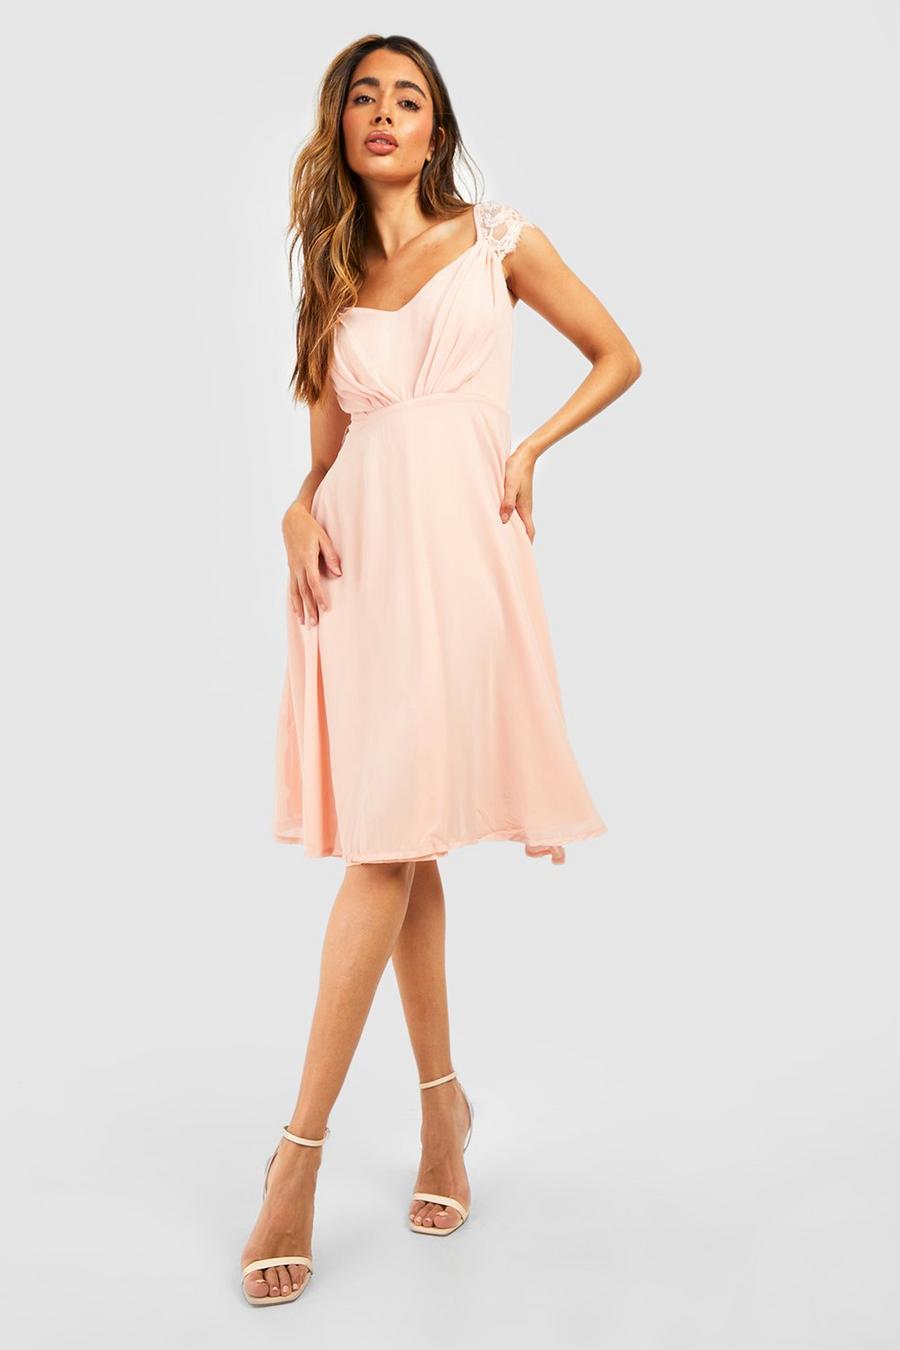 סמוק rosa שמלת מידי סקייטר מבד שיפון לשושבינה עם תחרה image number 1